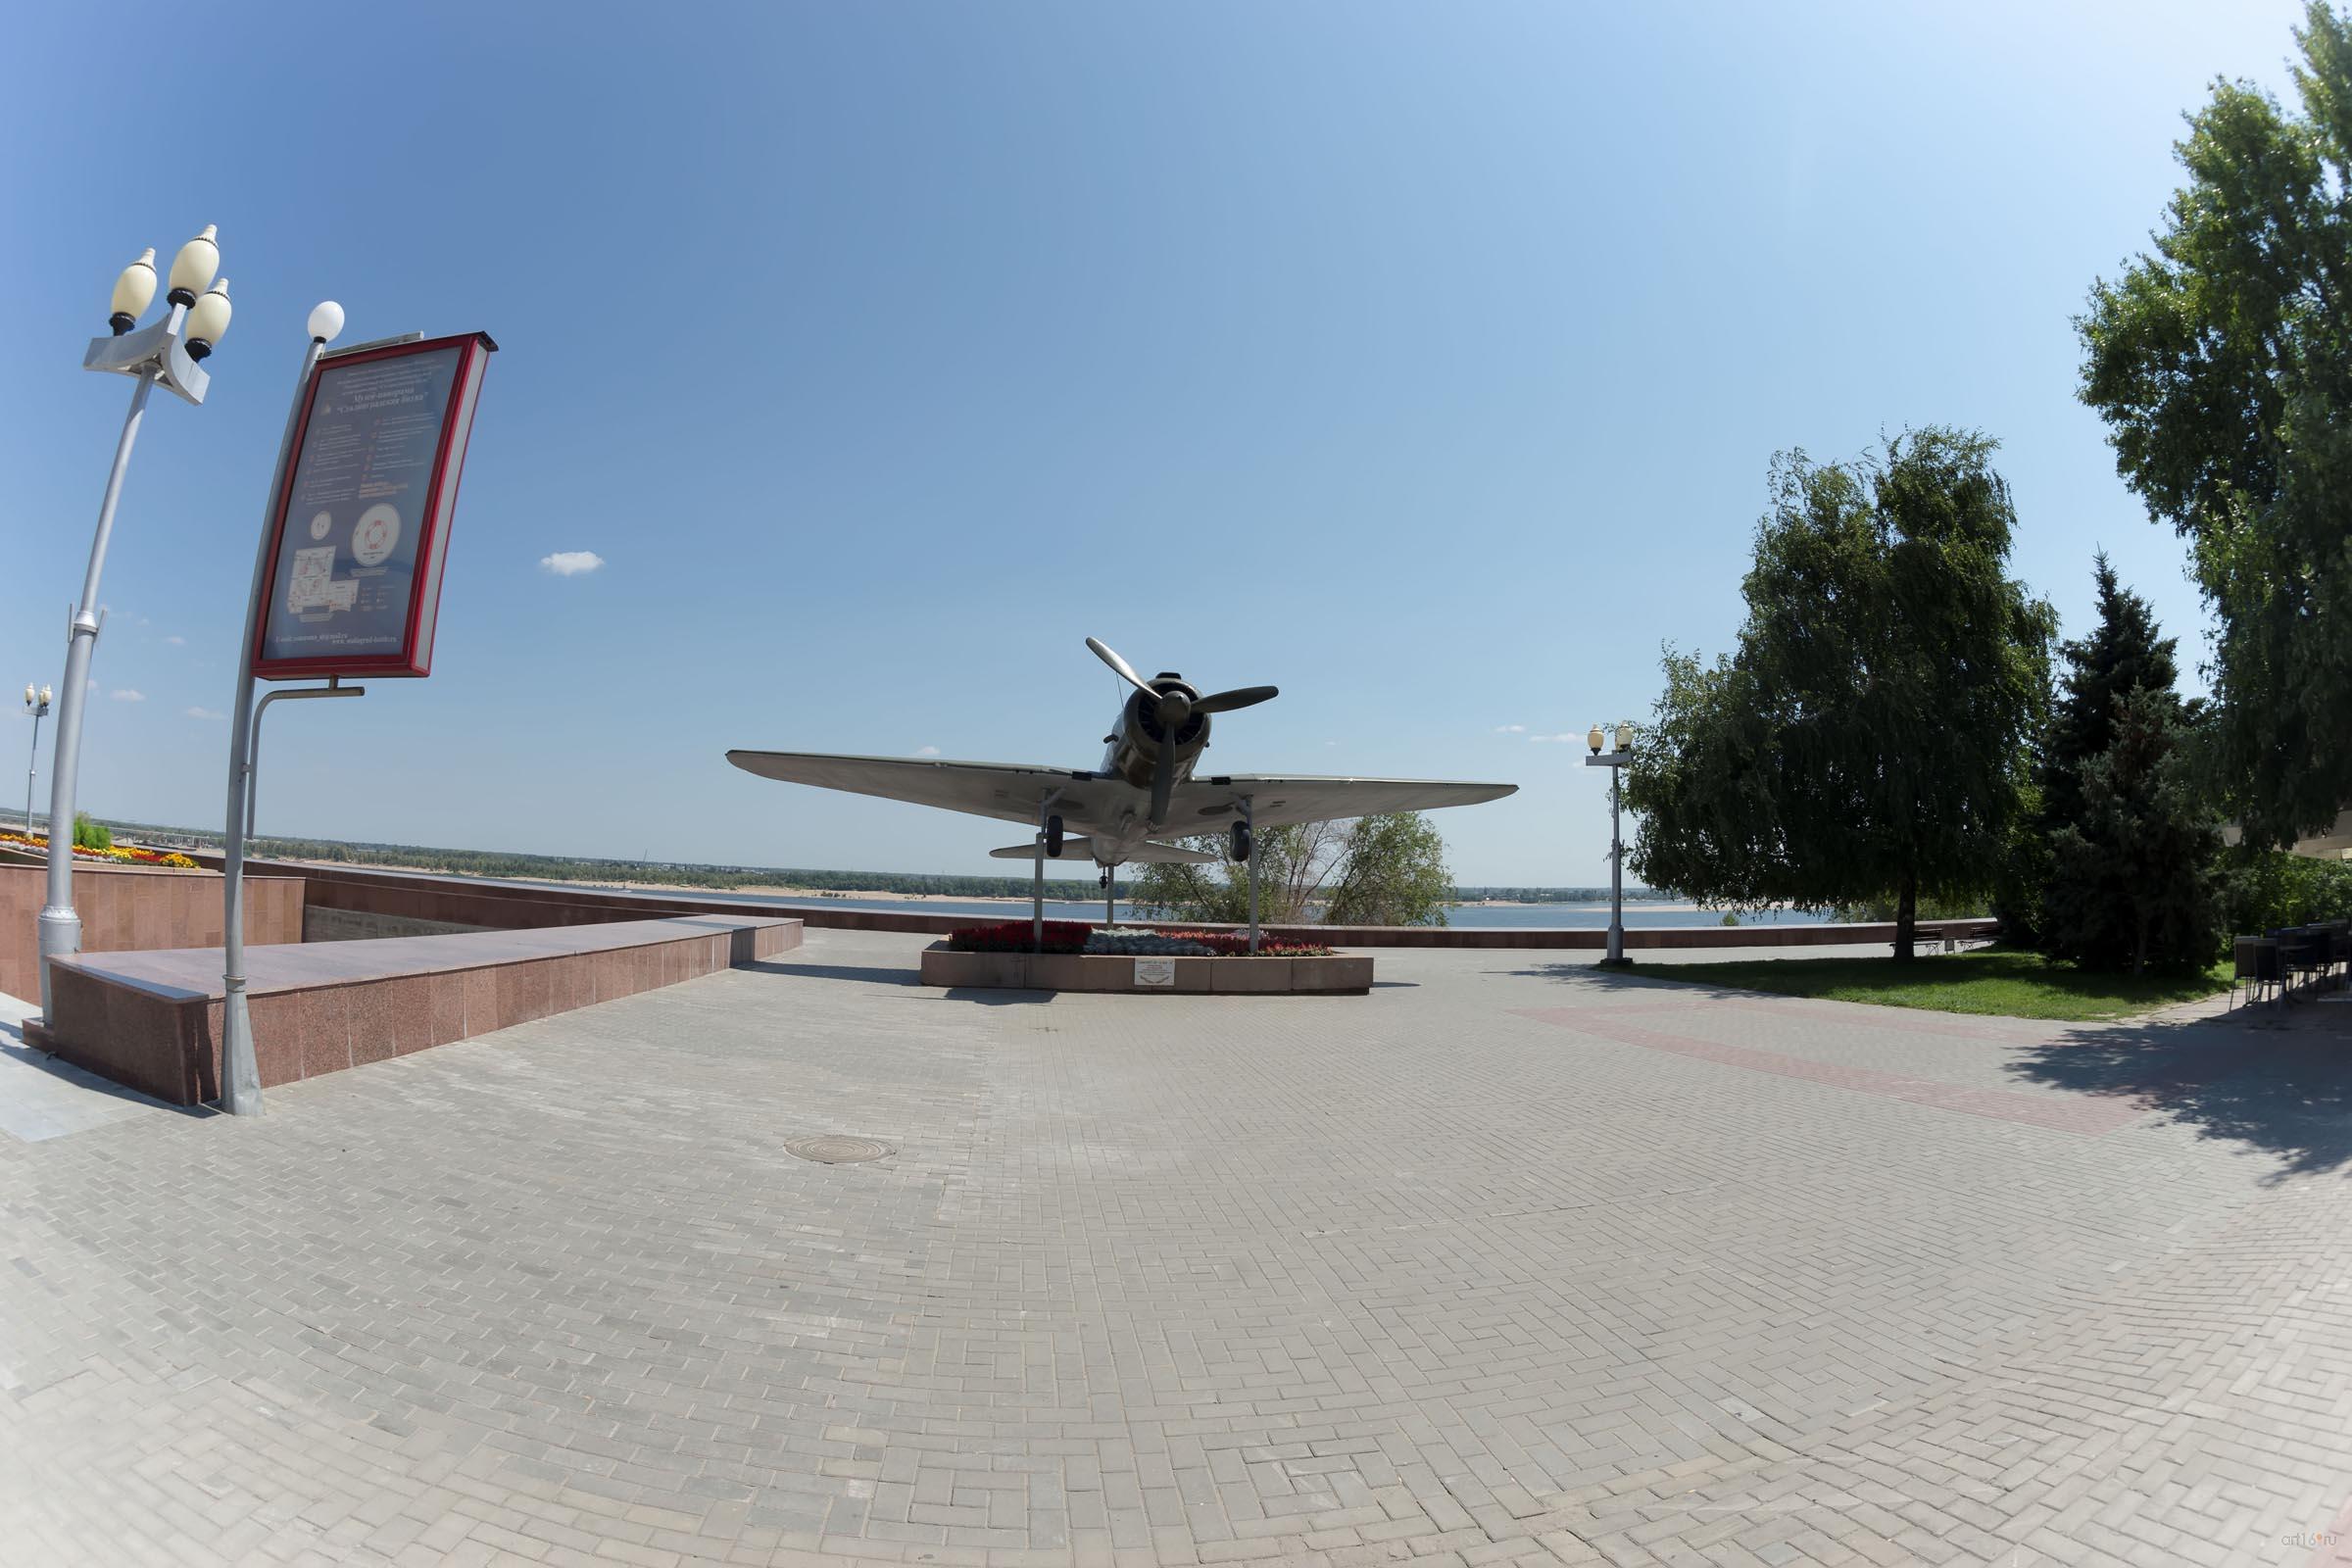 Макет ближнего бомбардировщика Су-2 ::Волгогорад. 2015